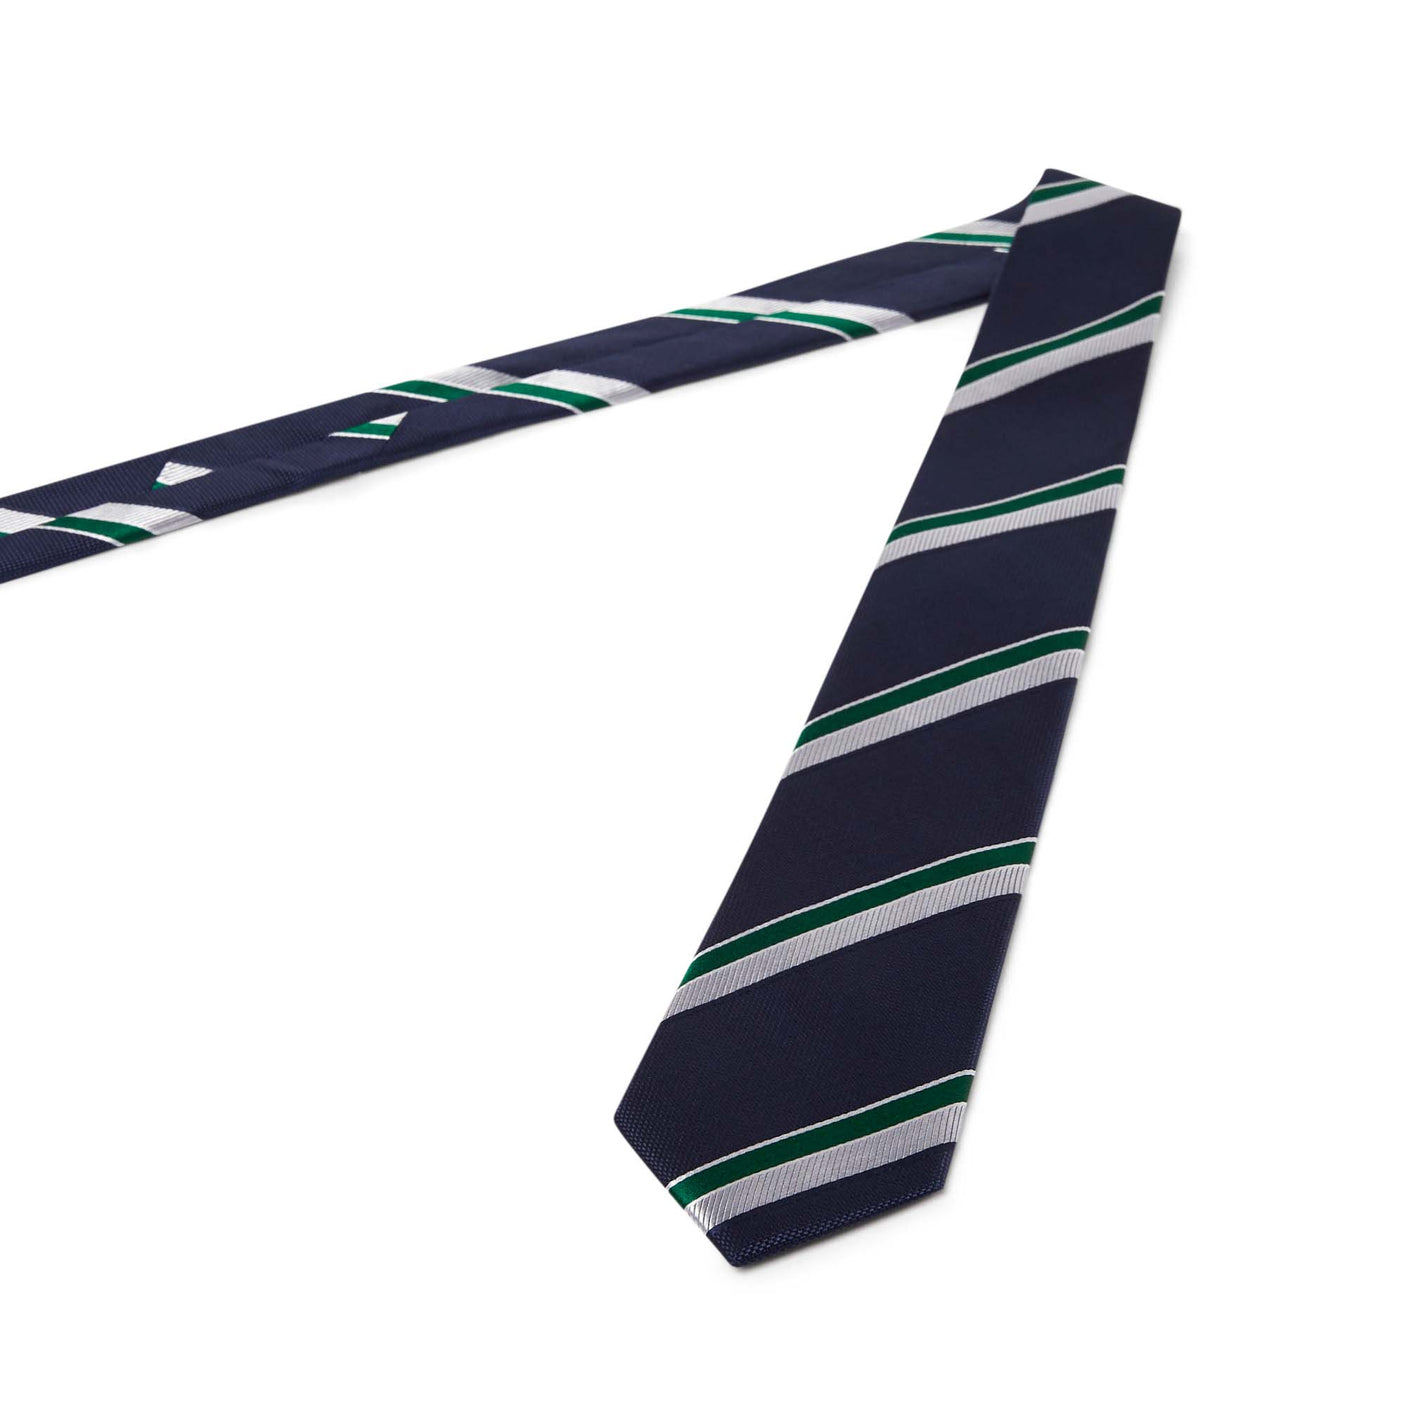 Corbata rayas plateadas y verdes